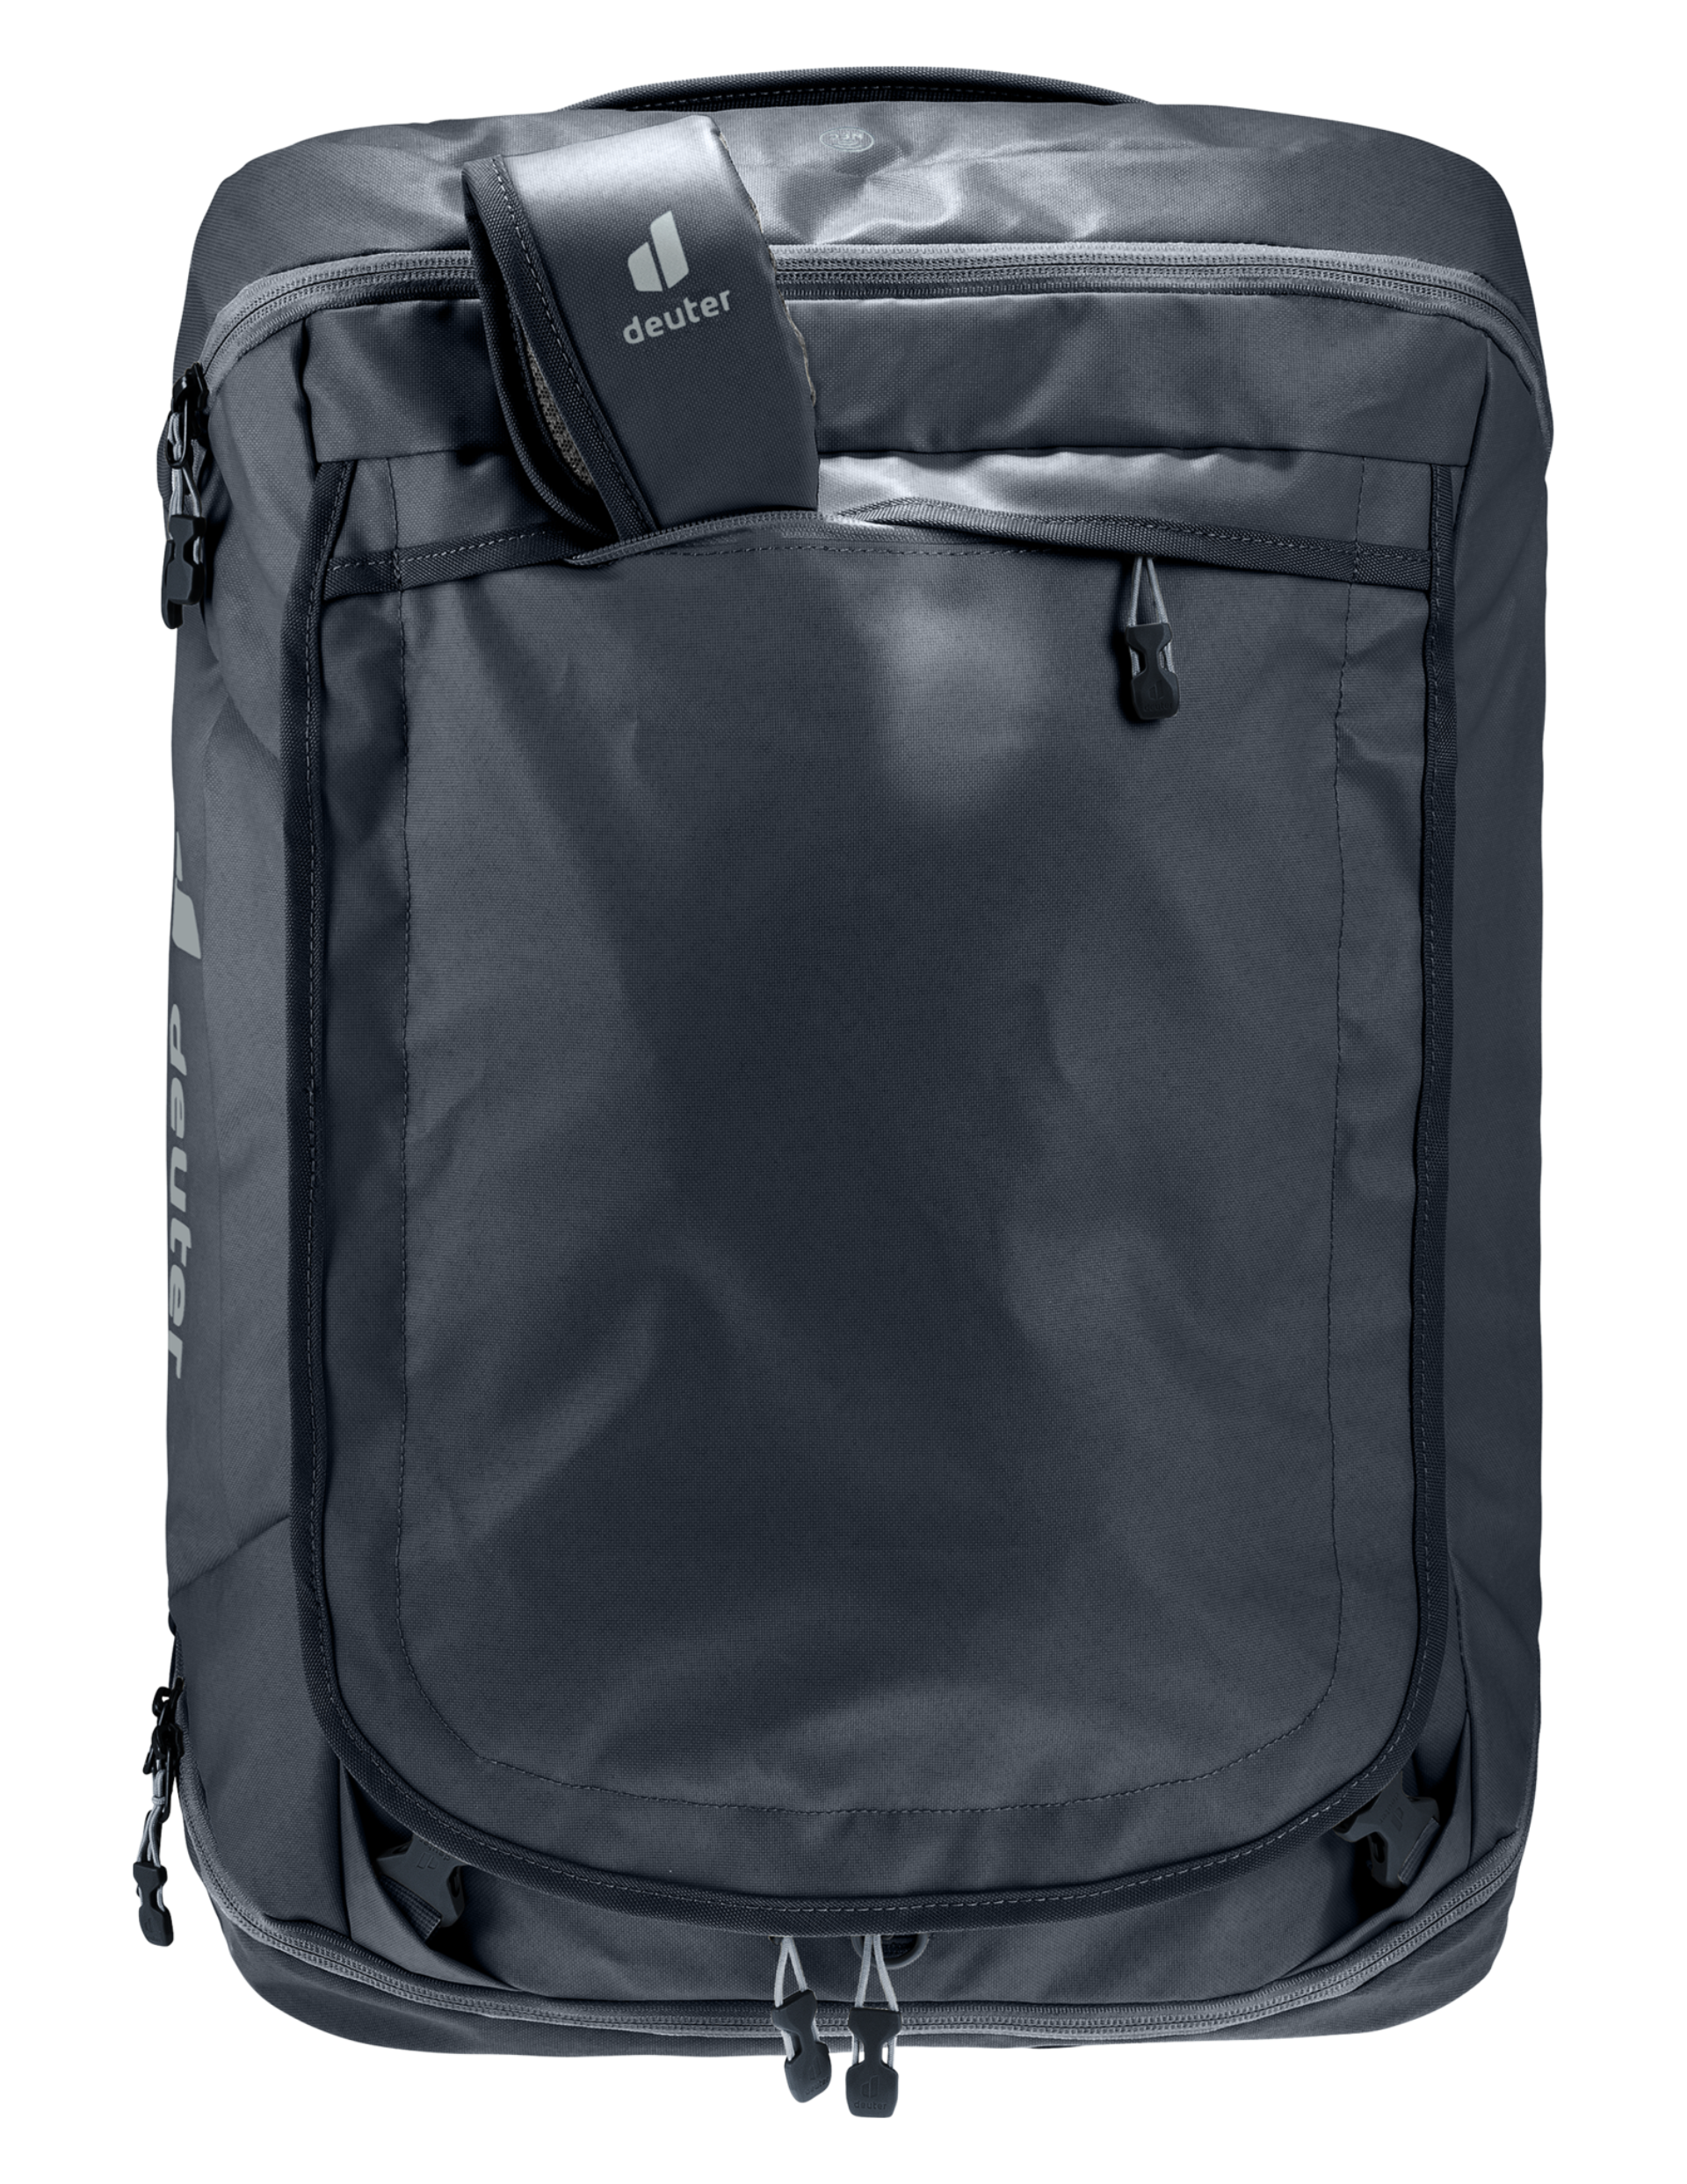 Transit 40 Deuter : le sac à dos de voyage en avion et cabine